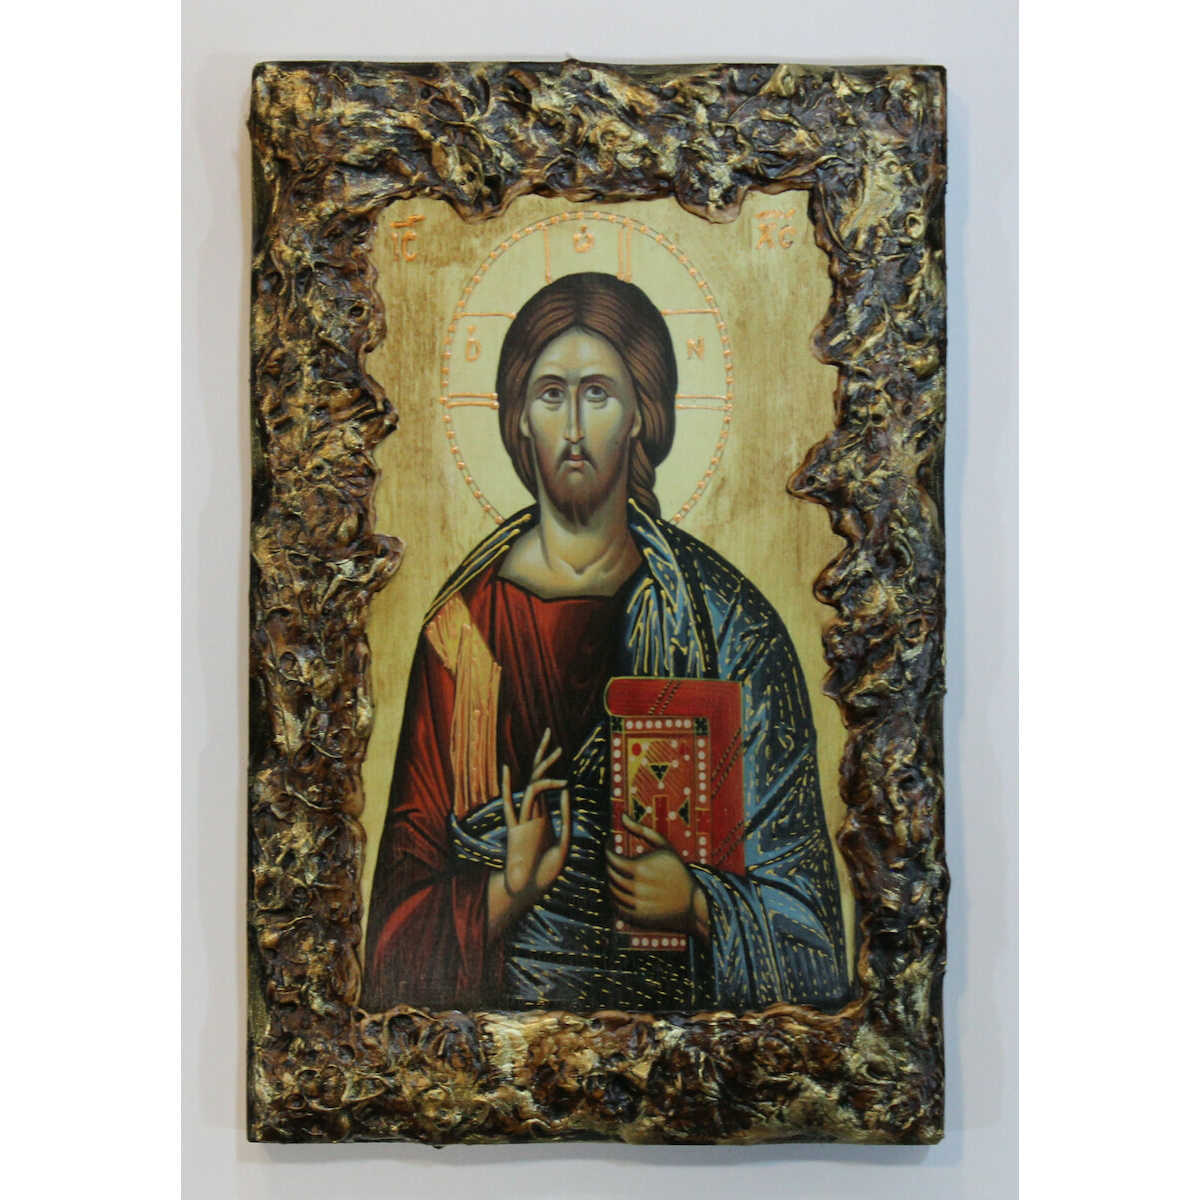 Εικόνα Χριστού με περίγραμμα πάστας διαστάσεις 30×20 ξύλινη